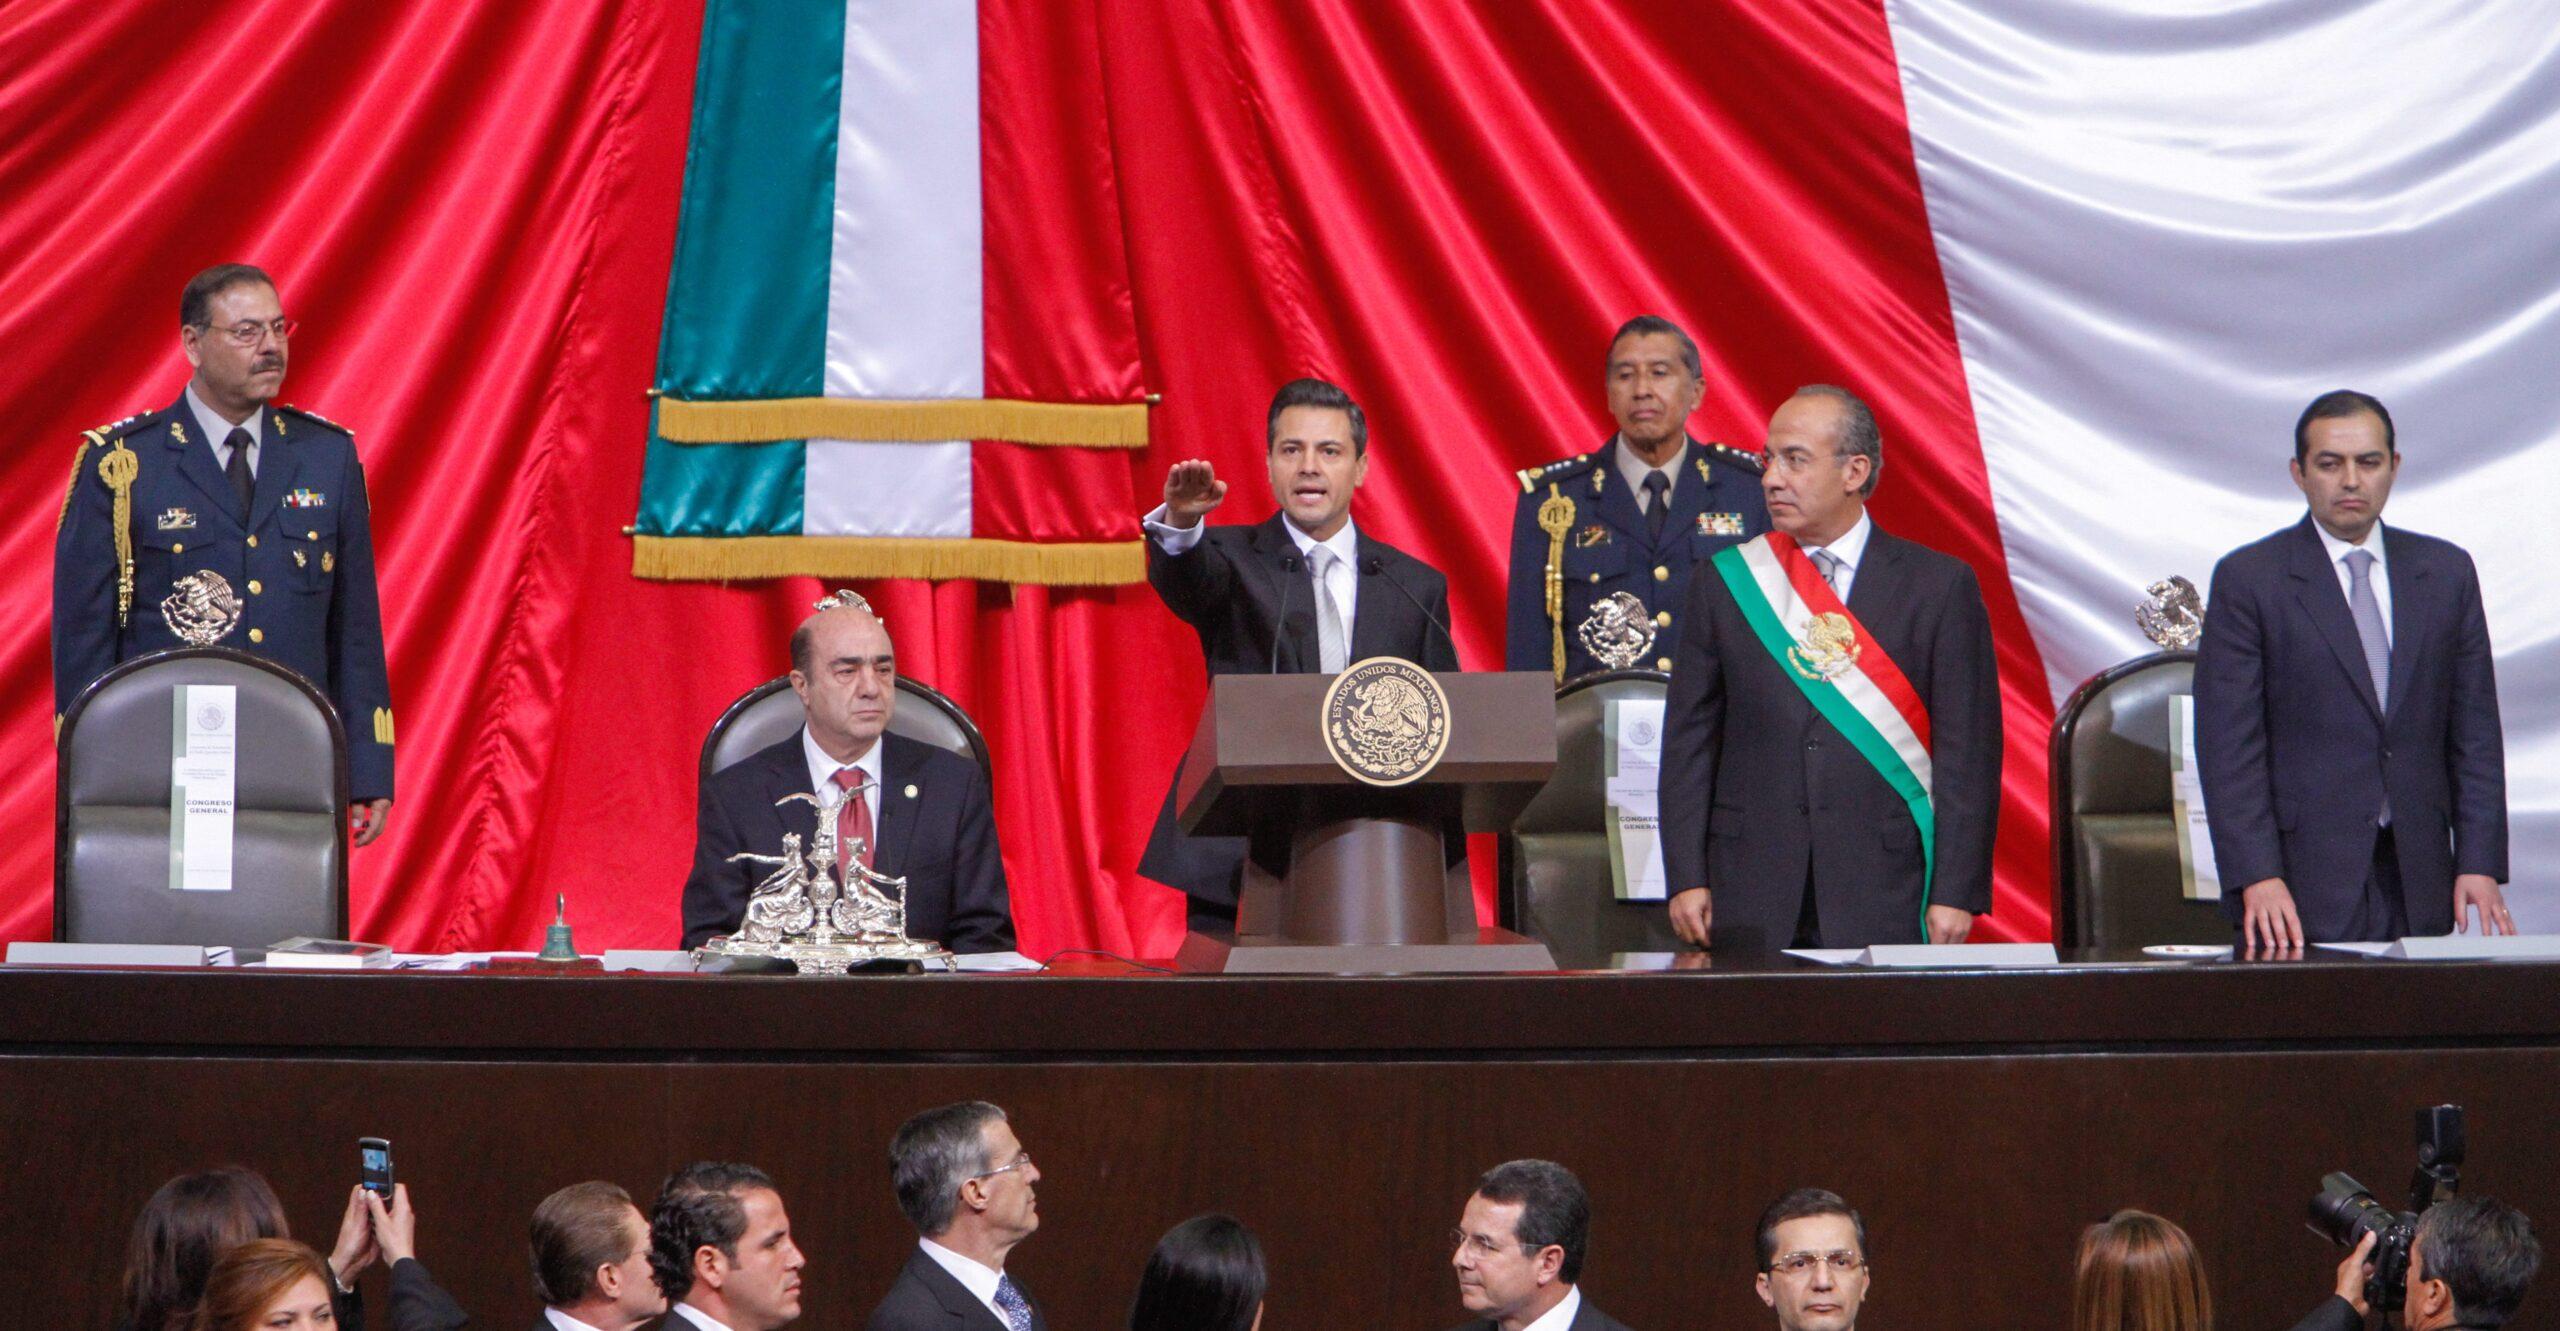 Toma de protesta de AMLO: ¿por qué en México se le llama así a la investidura del presidente?